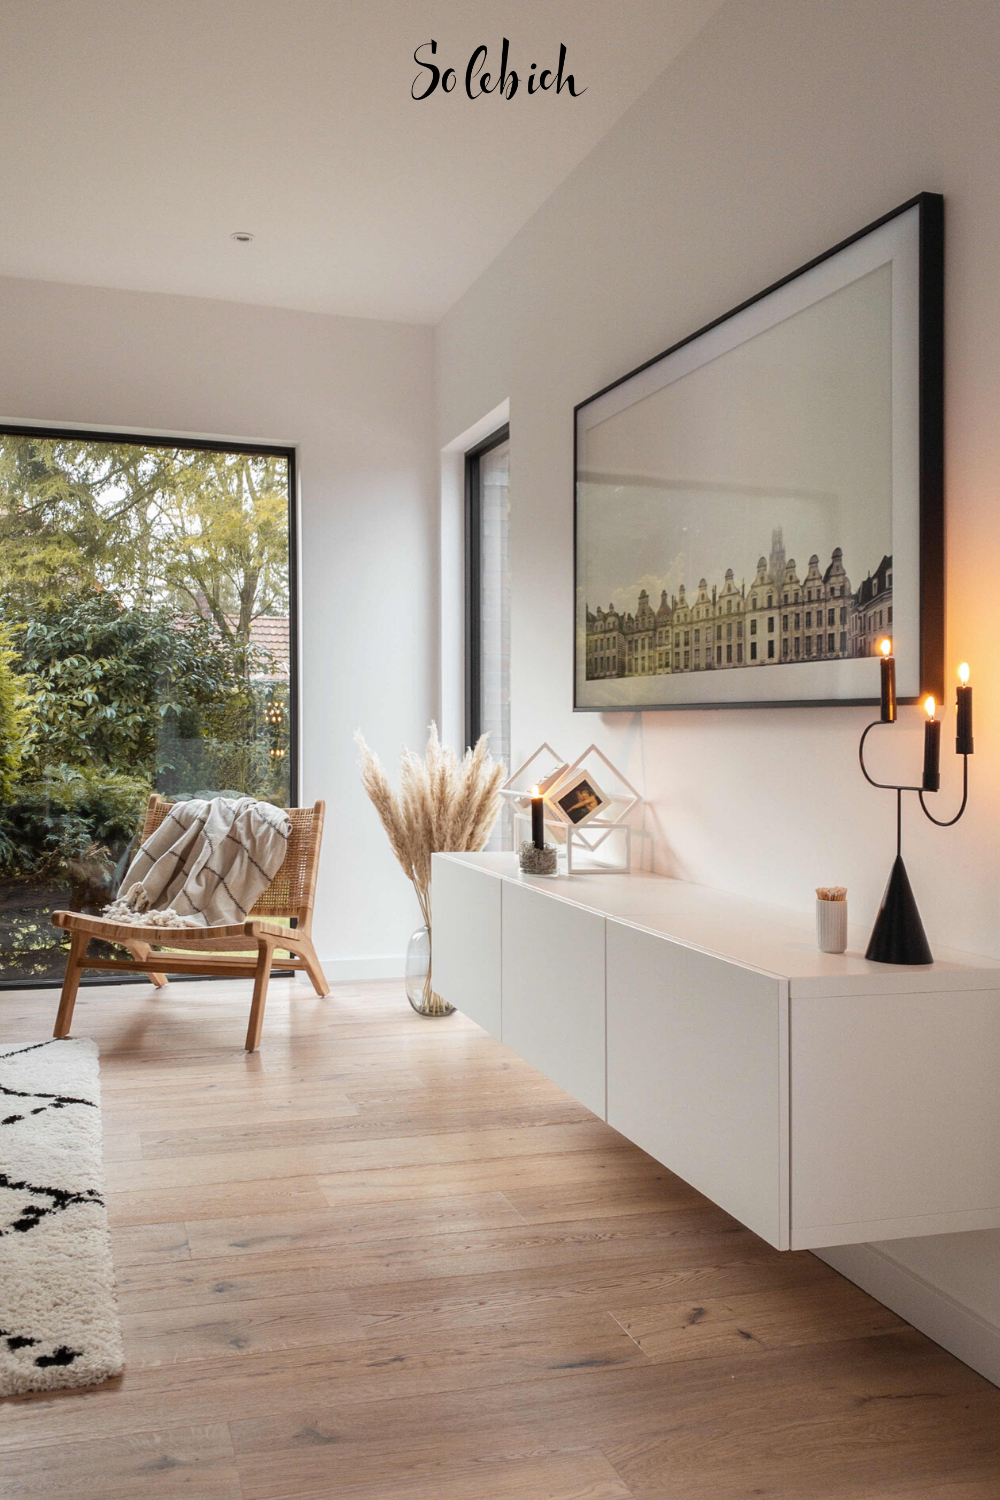 Hereinspaziert! 5 Neue Wohnungseinblicke Auf Solebich | Wohnzimmer throughout Wohnzimmer Einrichten Modern